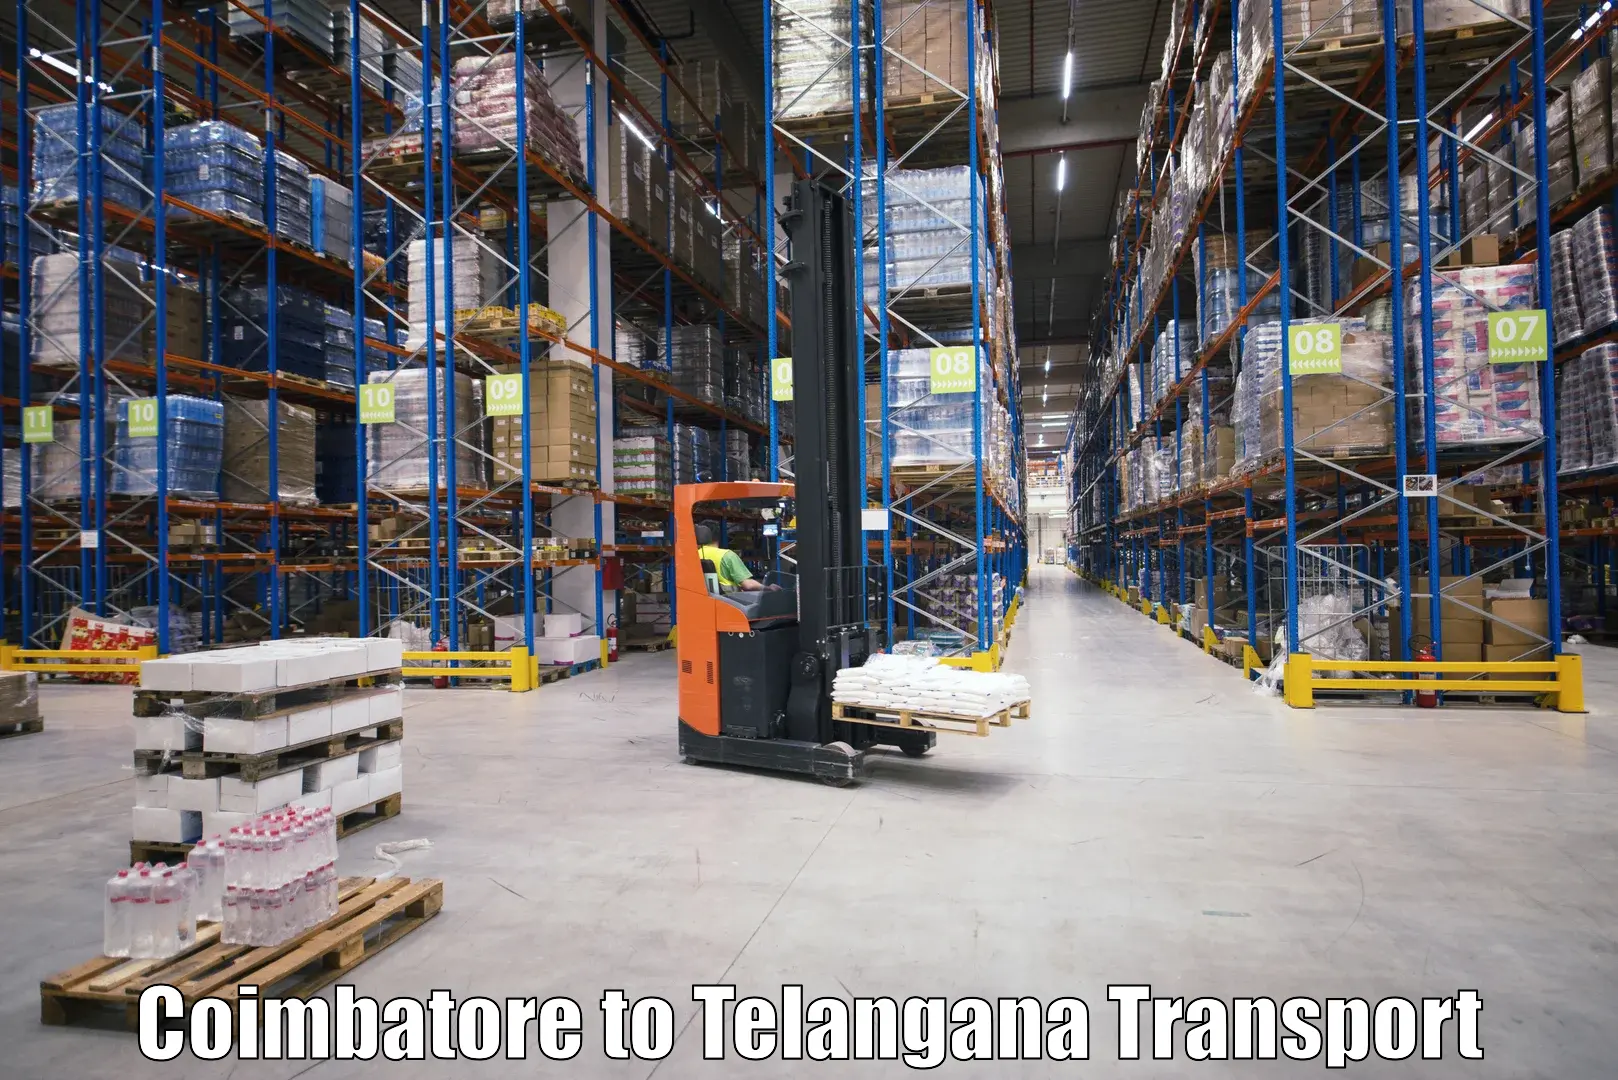 India truck logistics services in Coimbatore to Ibrahimpatnam